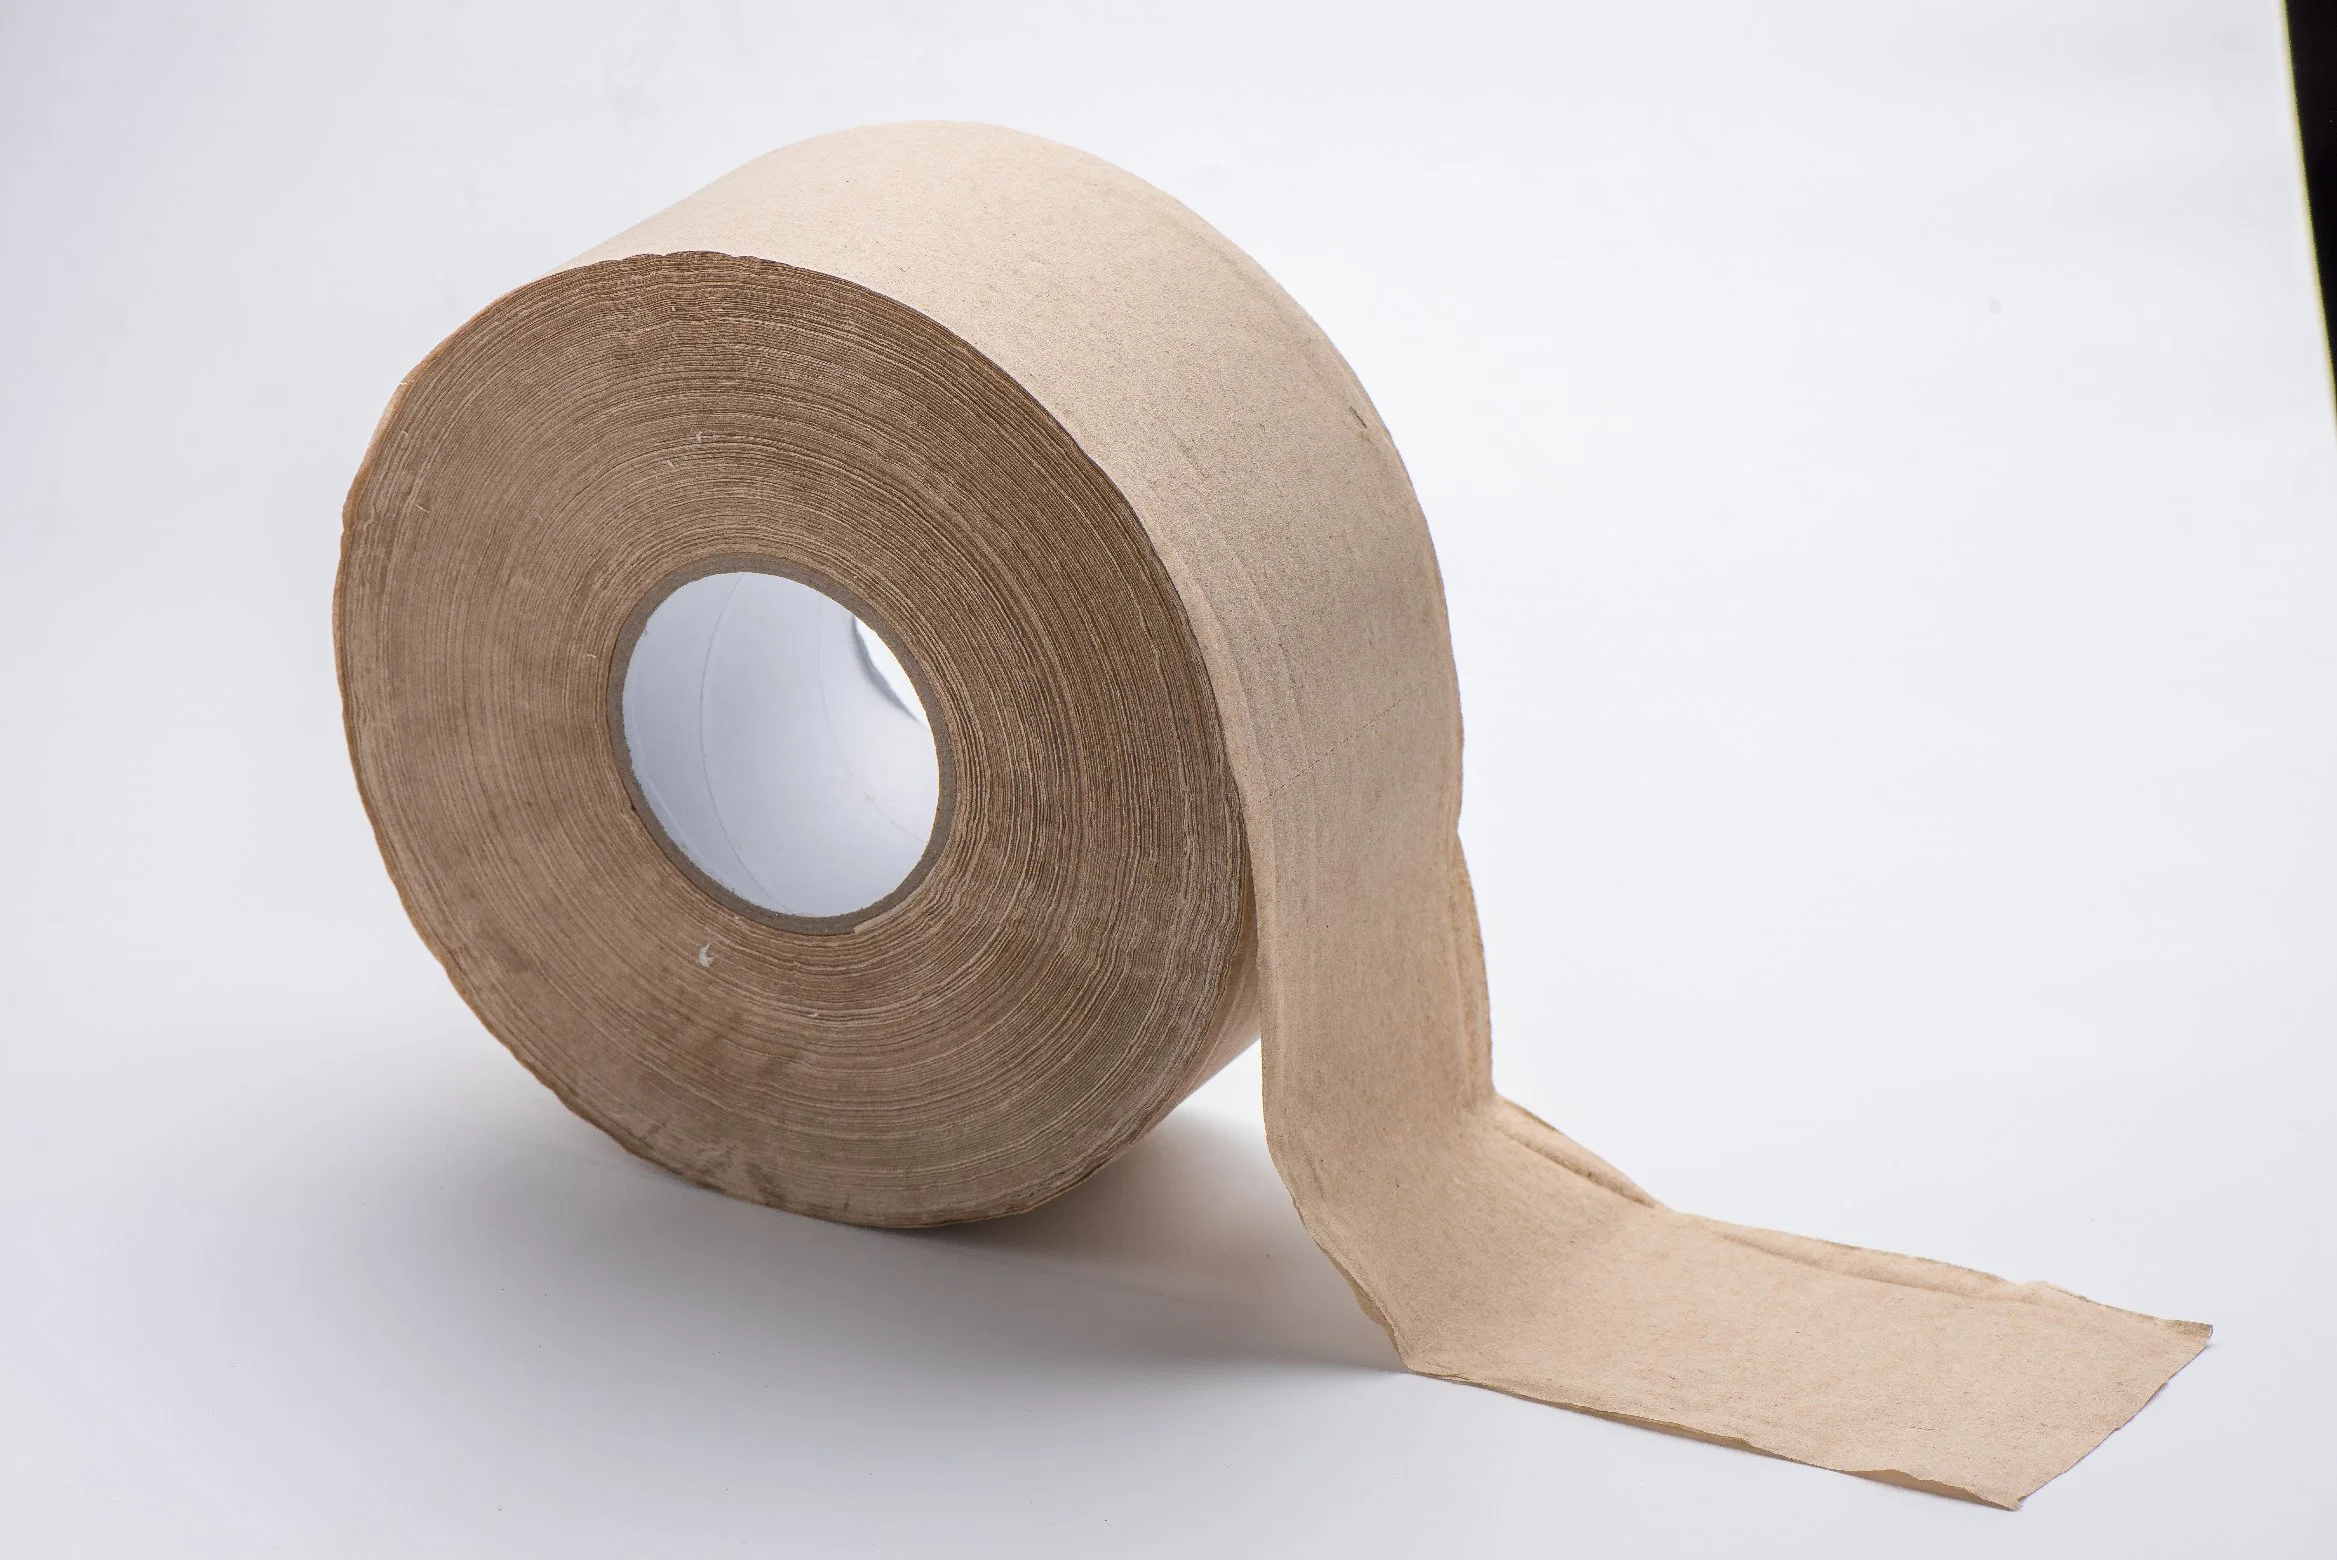 Jbr-001 Papel higiénico en rollo jumbo comercial de pulpa de madera virgen (12 rollos, 2 capas)